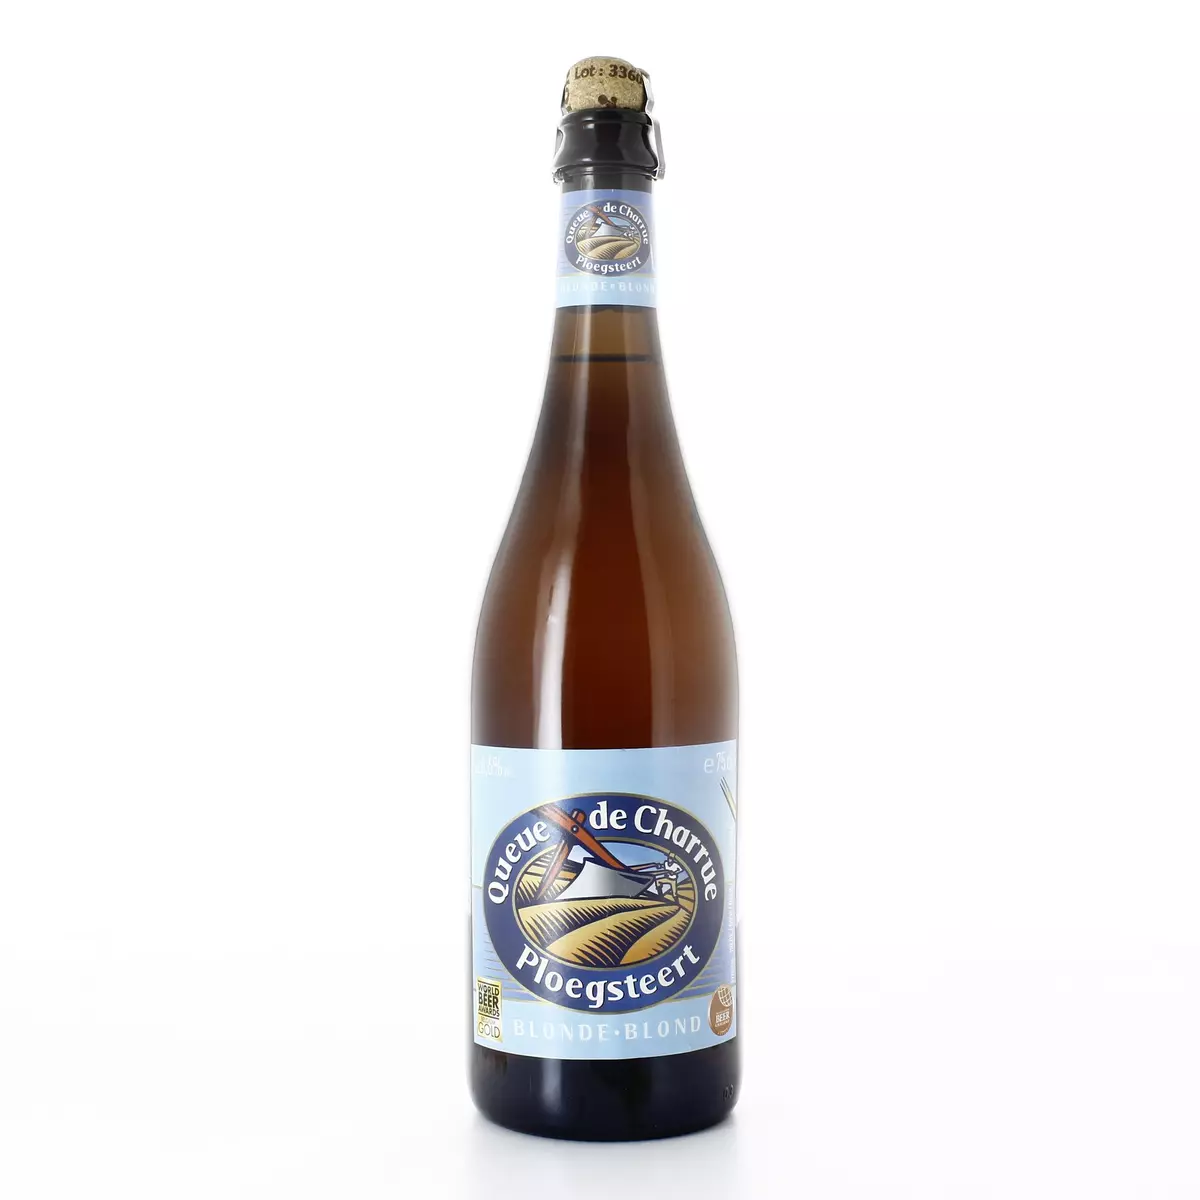 QUEUE DE CHARRUE Bière blonde 6,6% 75cl